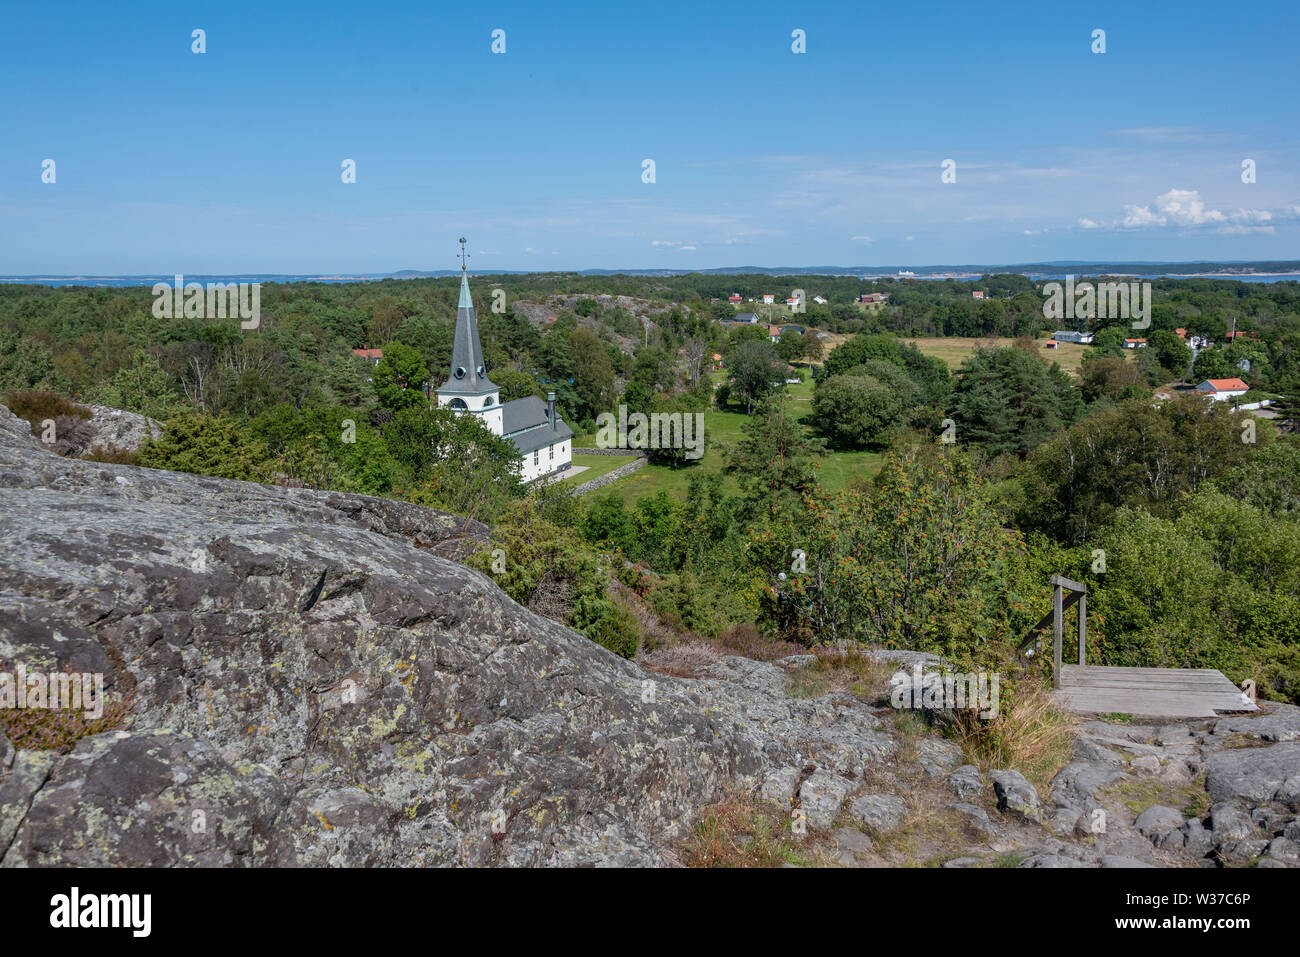 Koster, Schweden - 12. Juli 2019: Blick auf die Kirche von Koster im Nationalpark Kosterhavet in Schweden, Westküste. Stockfoto